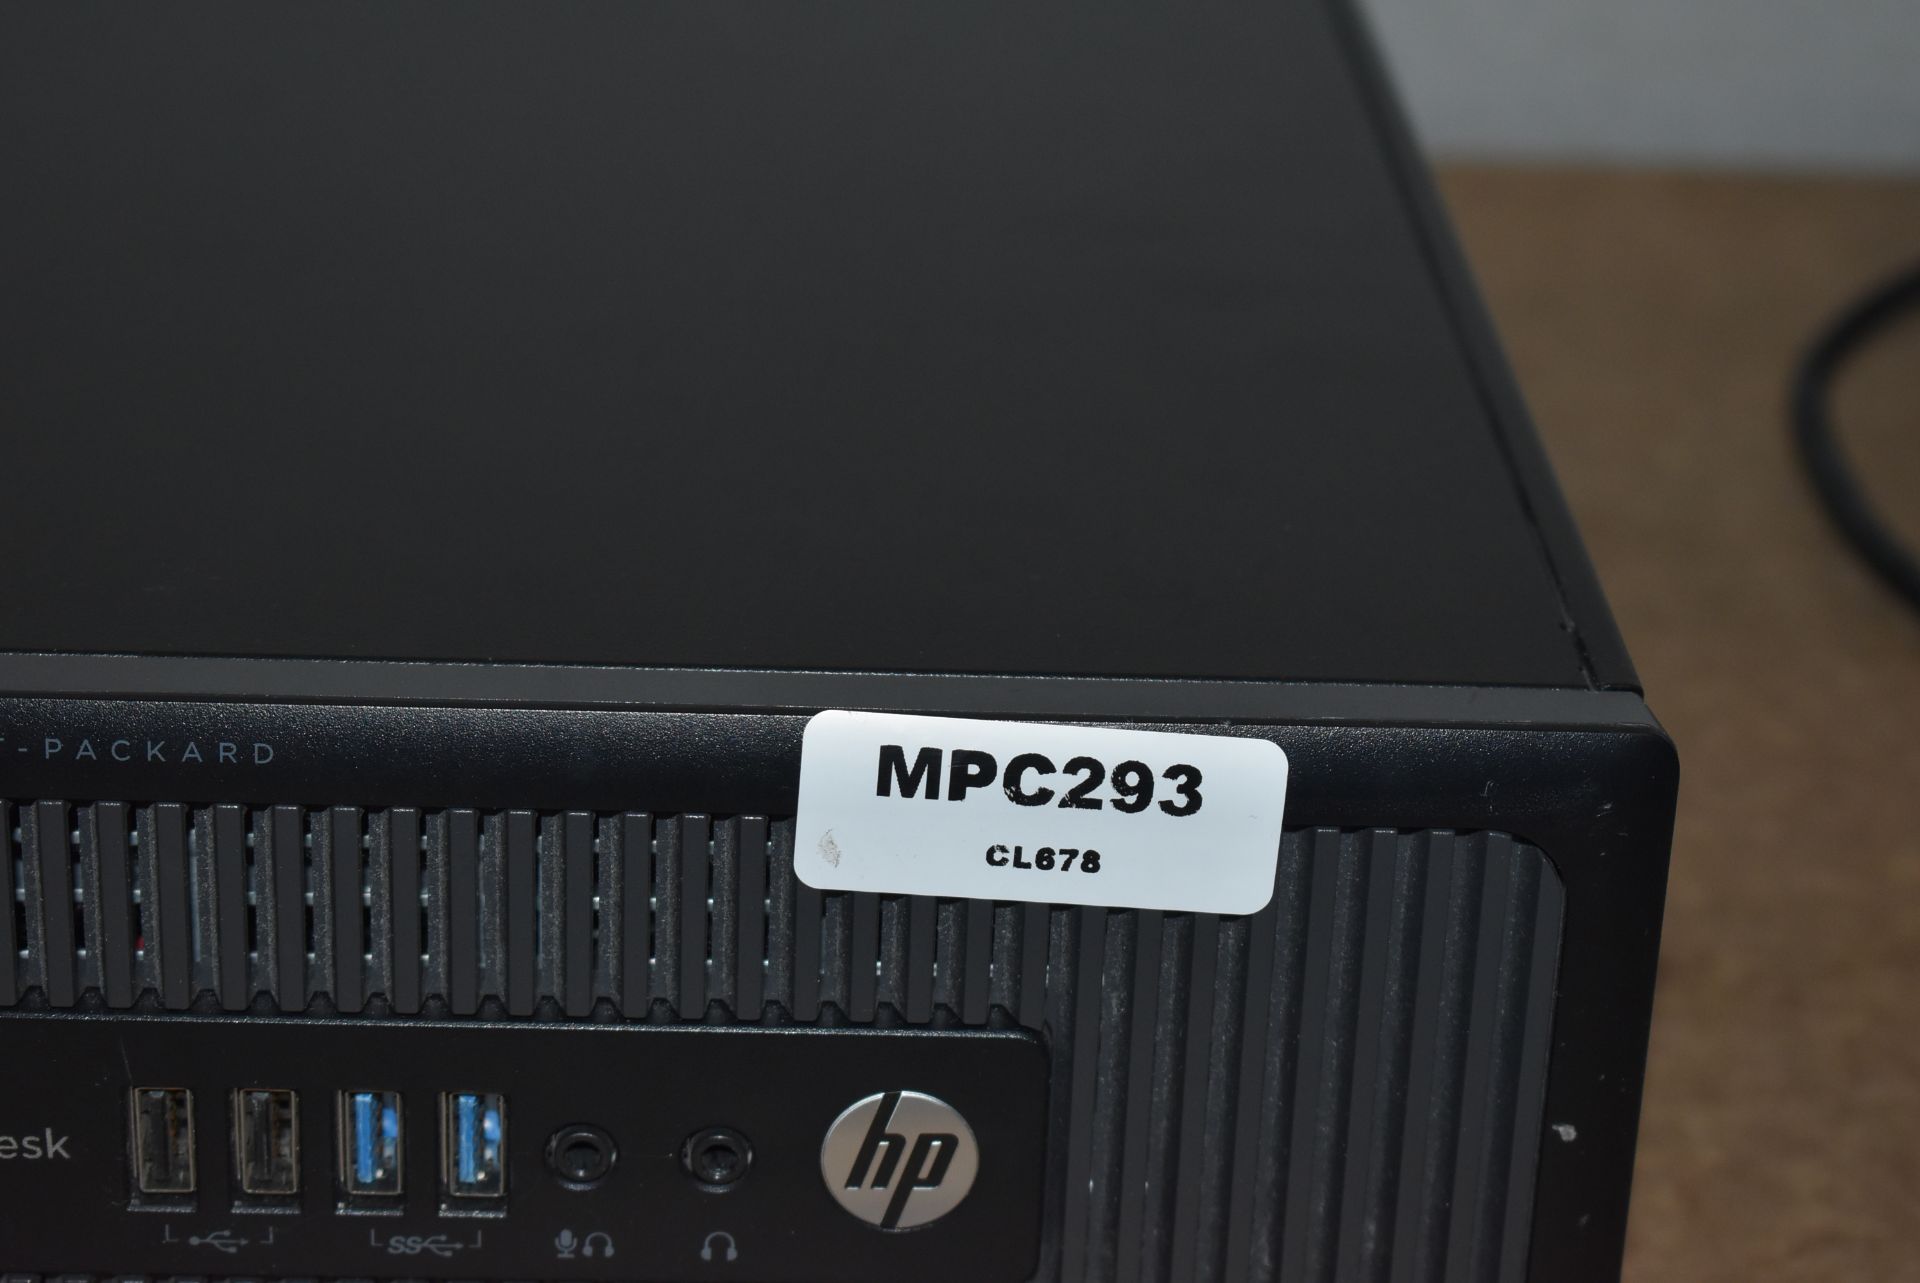 1 x HP Elite Desk 800 G1 SFF Desktop PC - Features an Intel i7-4770 3.4Ghz Quad Core Processor, - Image 7 of 7